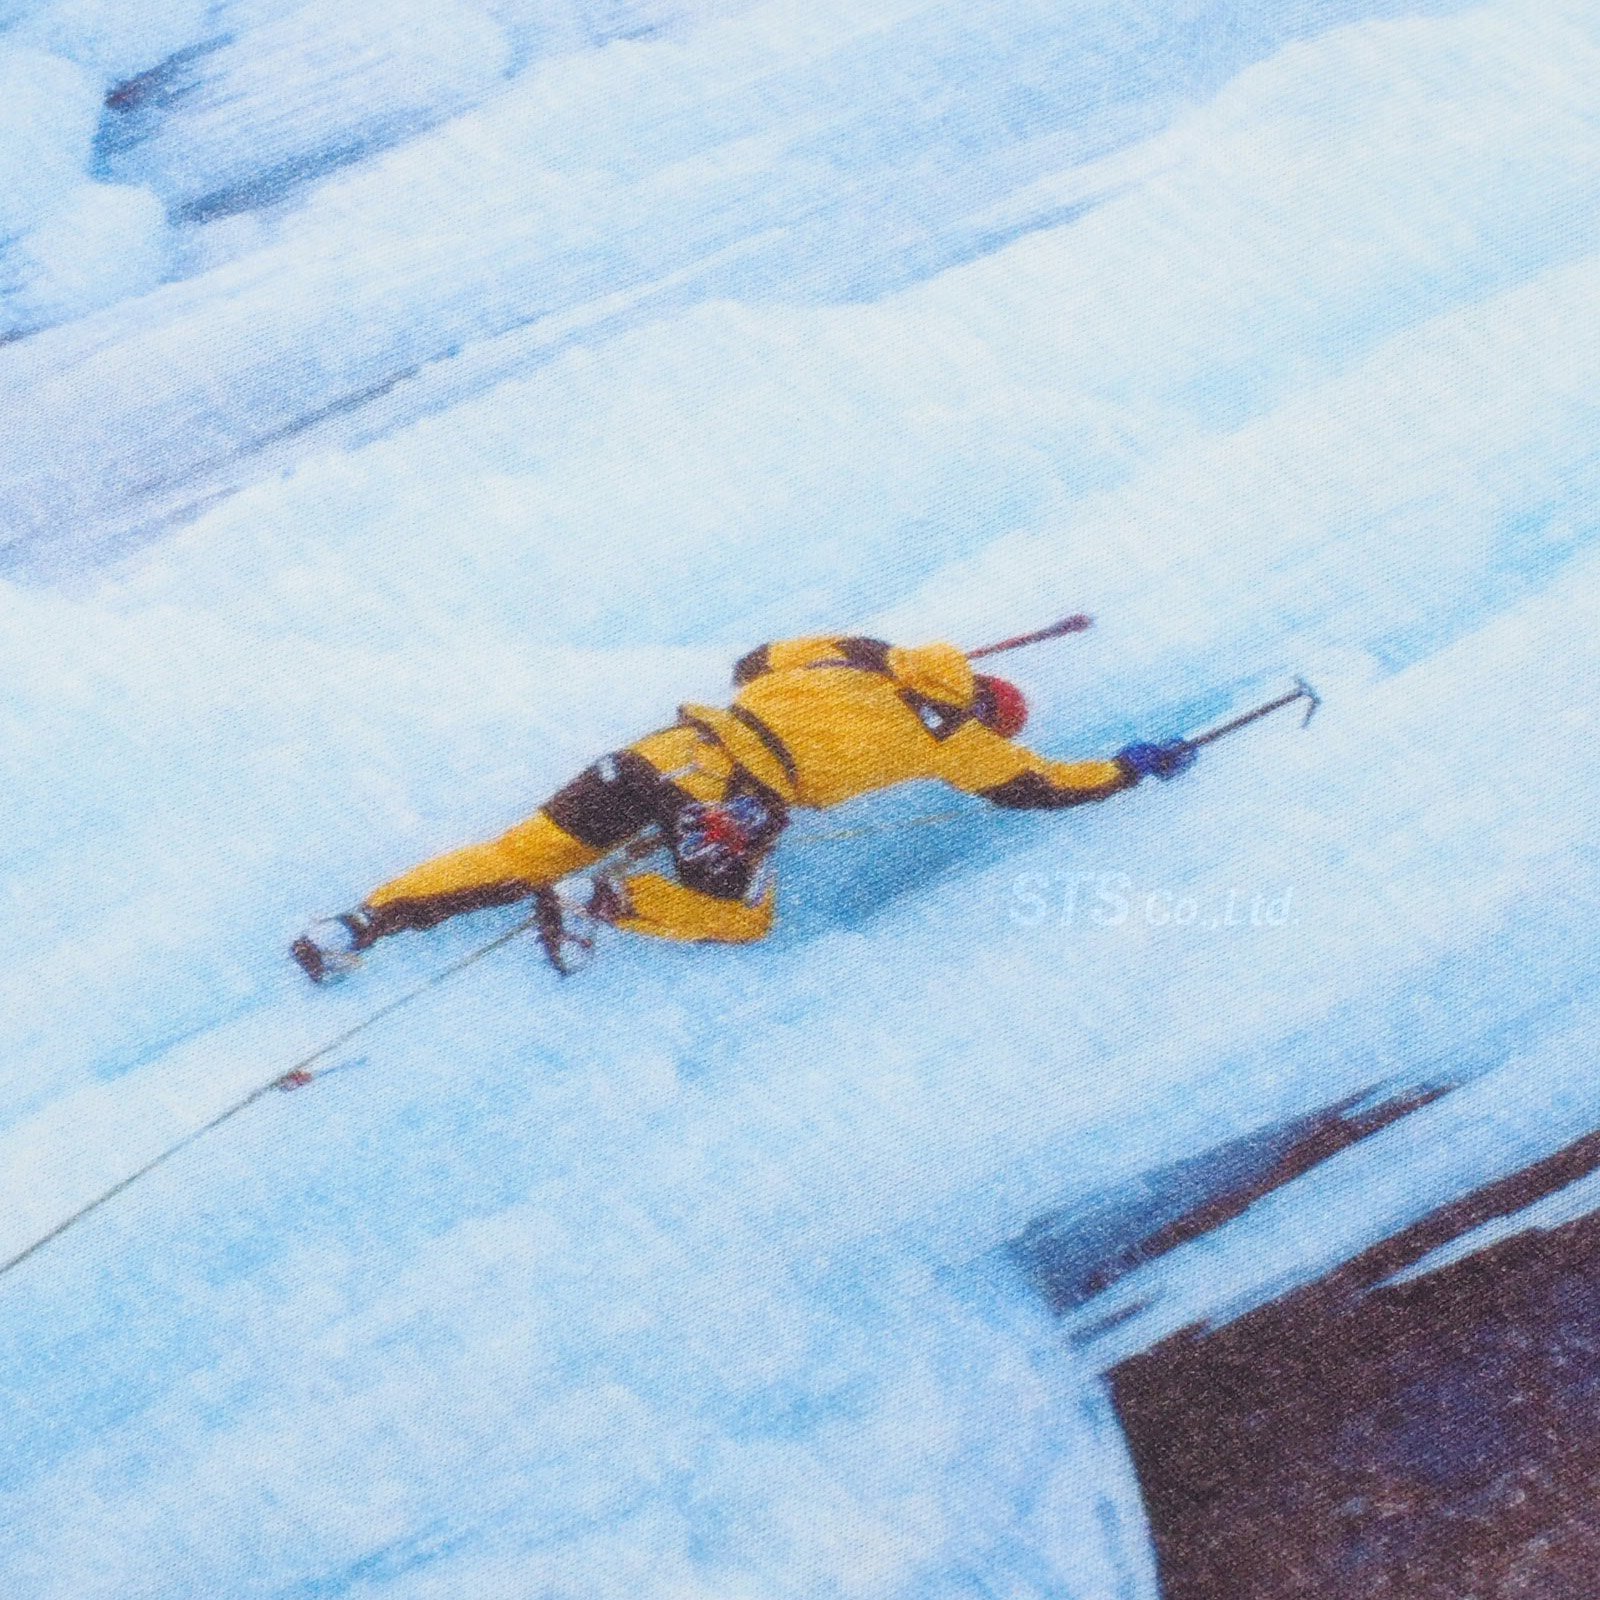 Supreme/The North Face Ice Climb Tee - UG.SHAFT